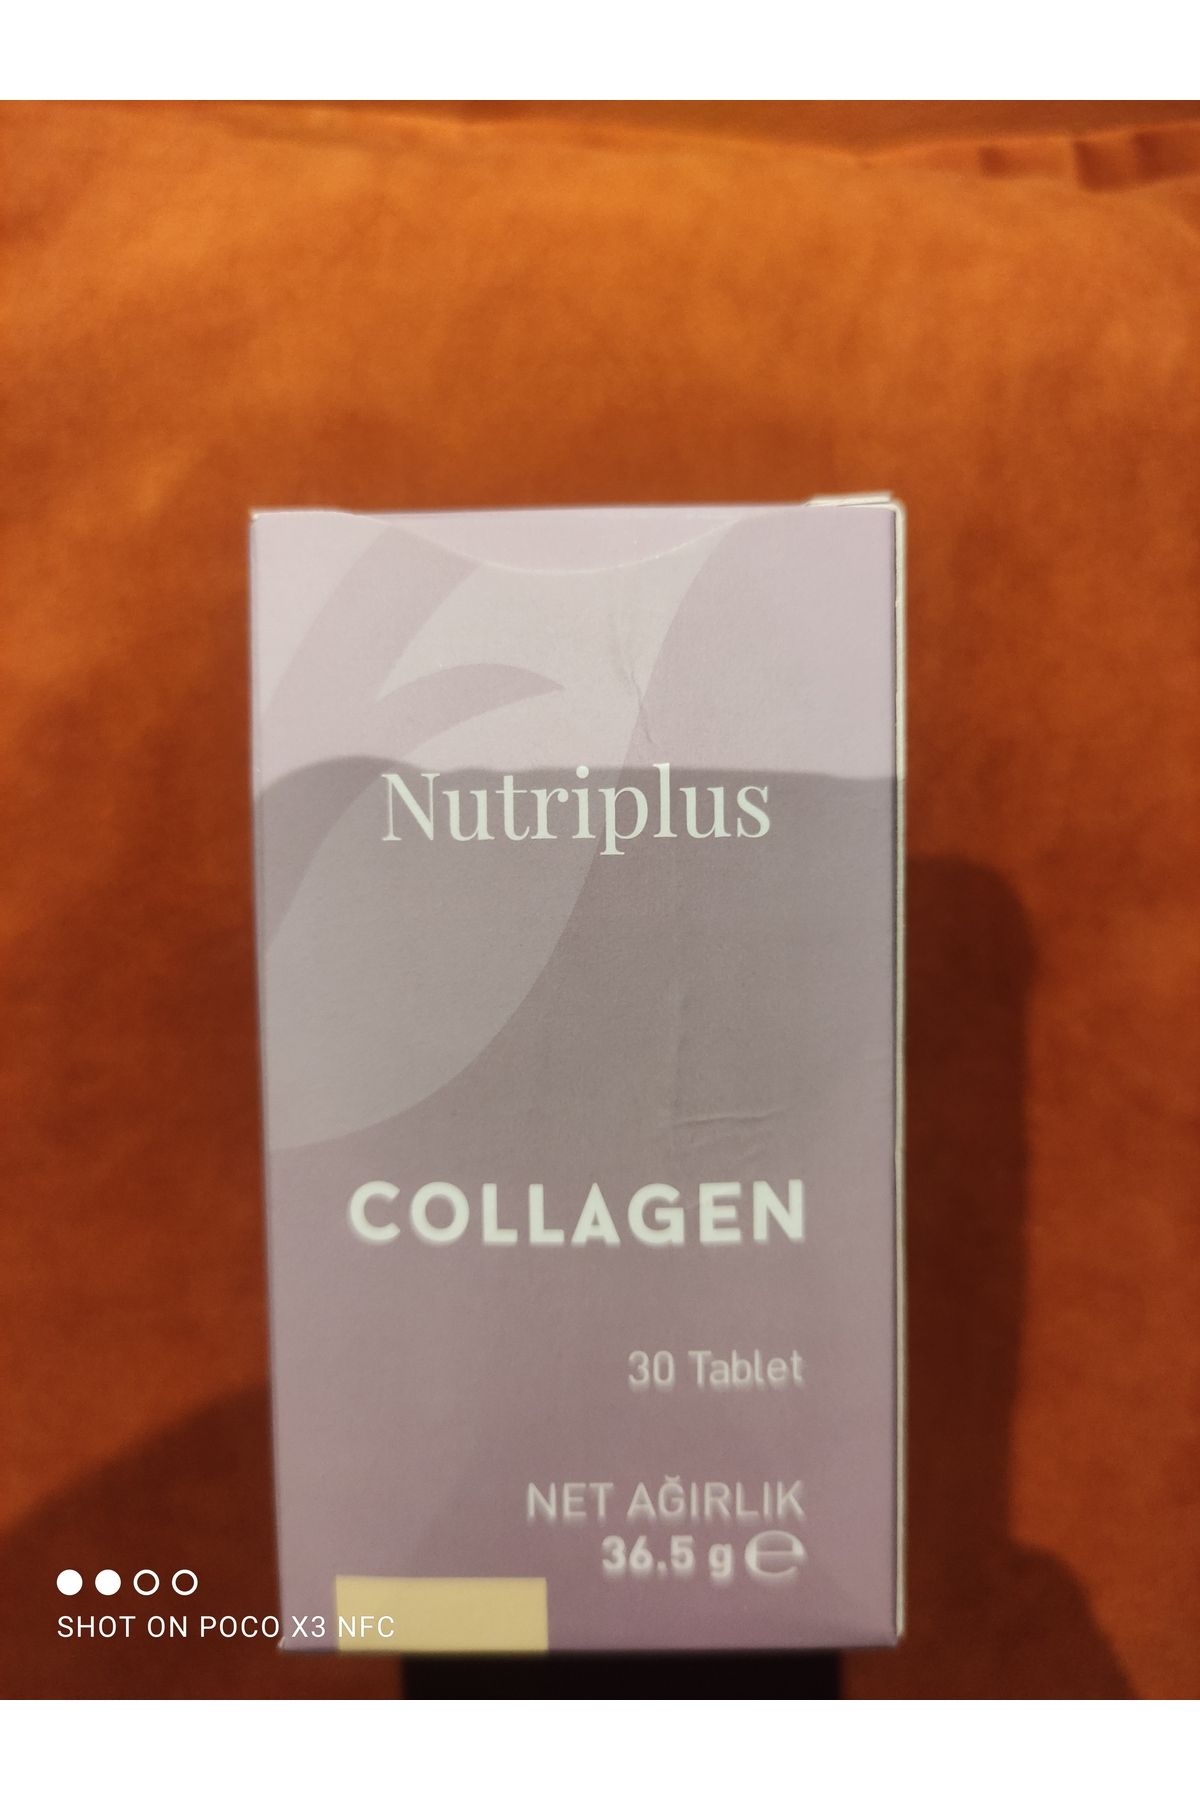 Farmasi collagen